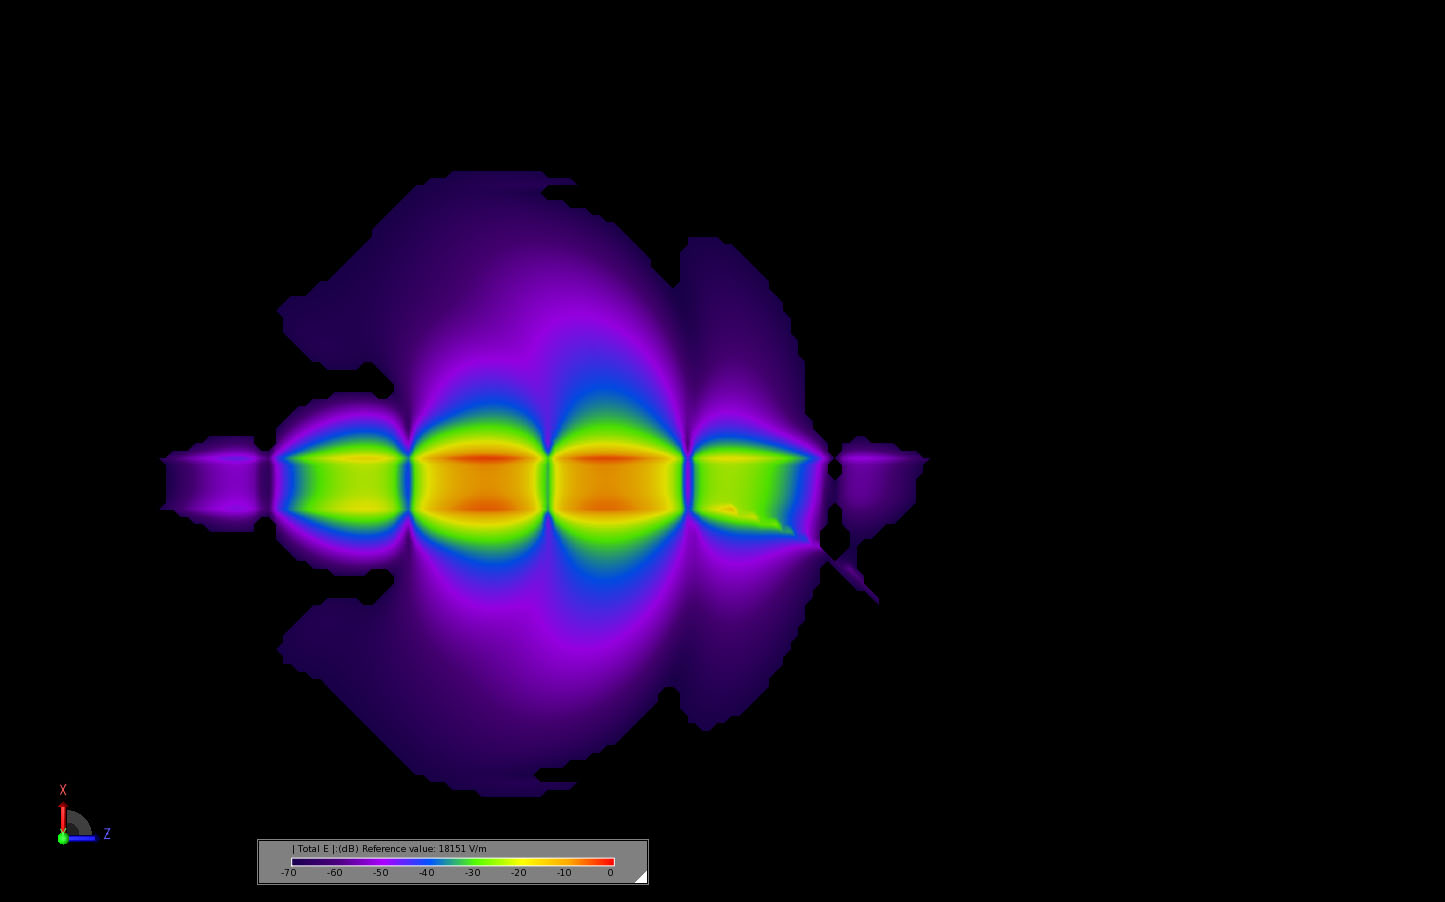 图 12 0.419 ns 时天线中心的瞬态电场分布。